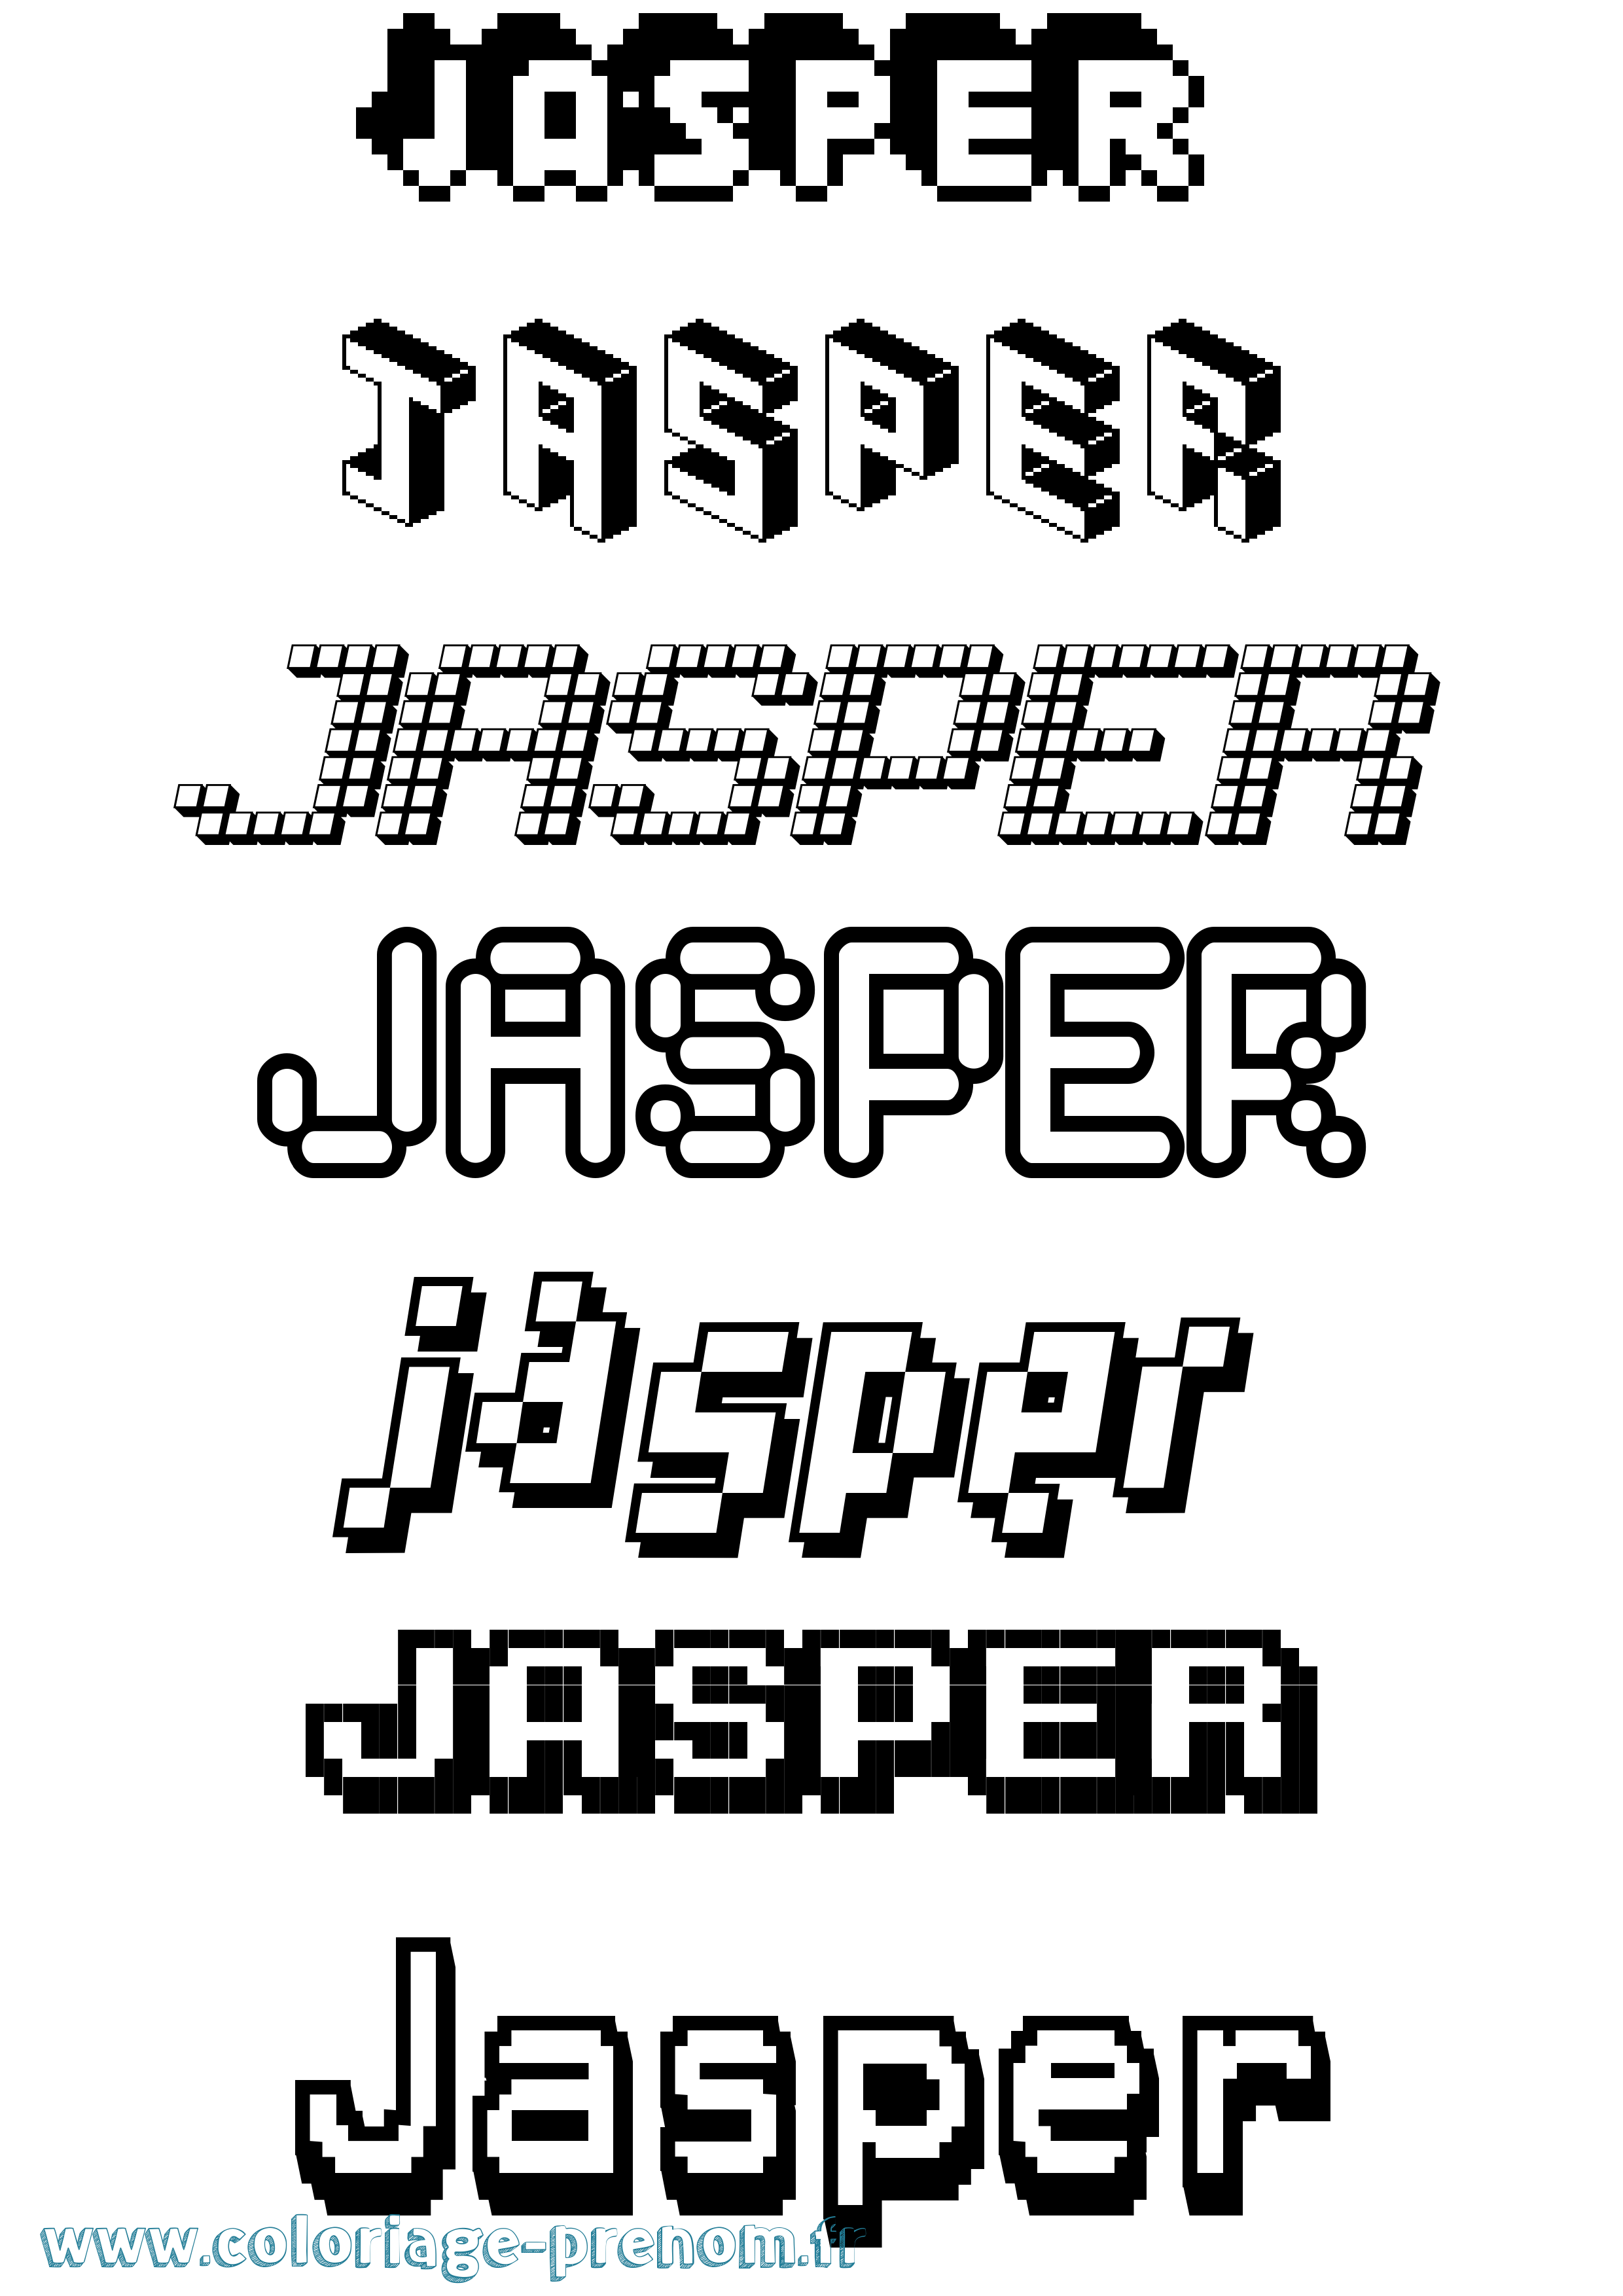 Coloriage prénom Jasper Pixel